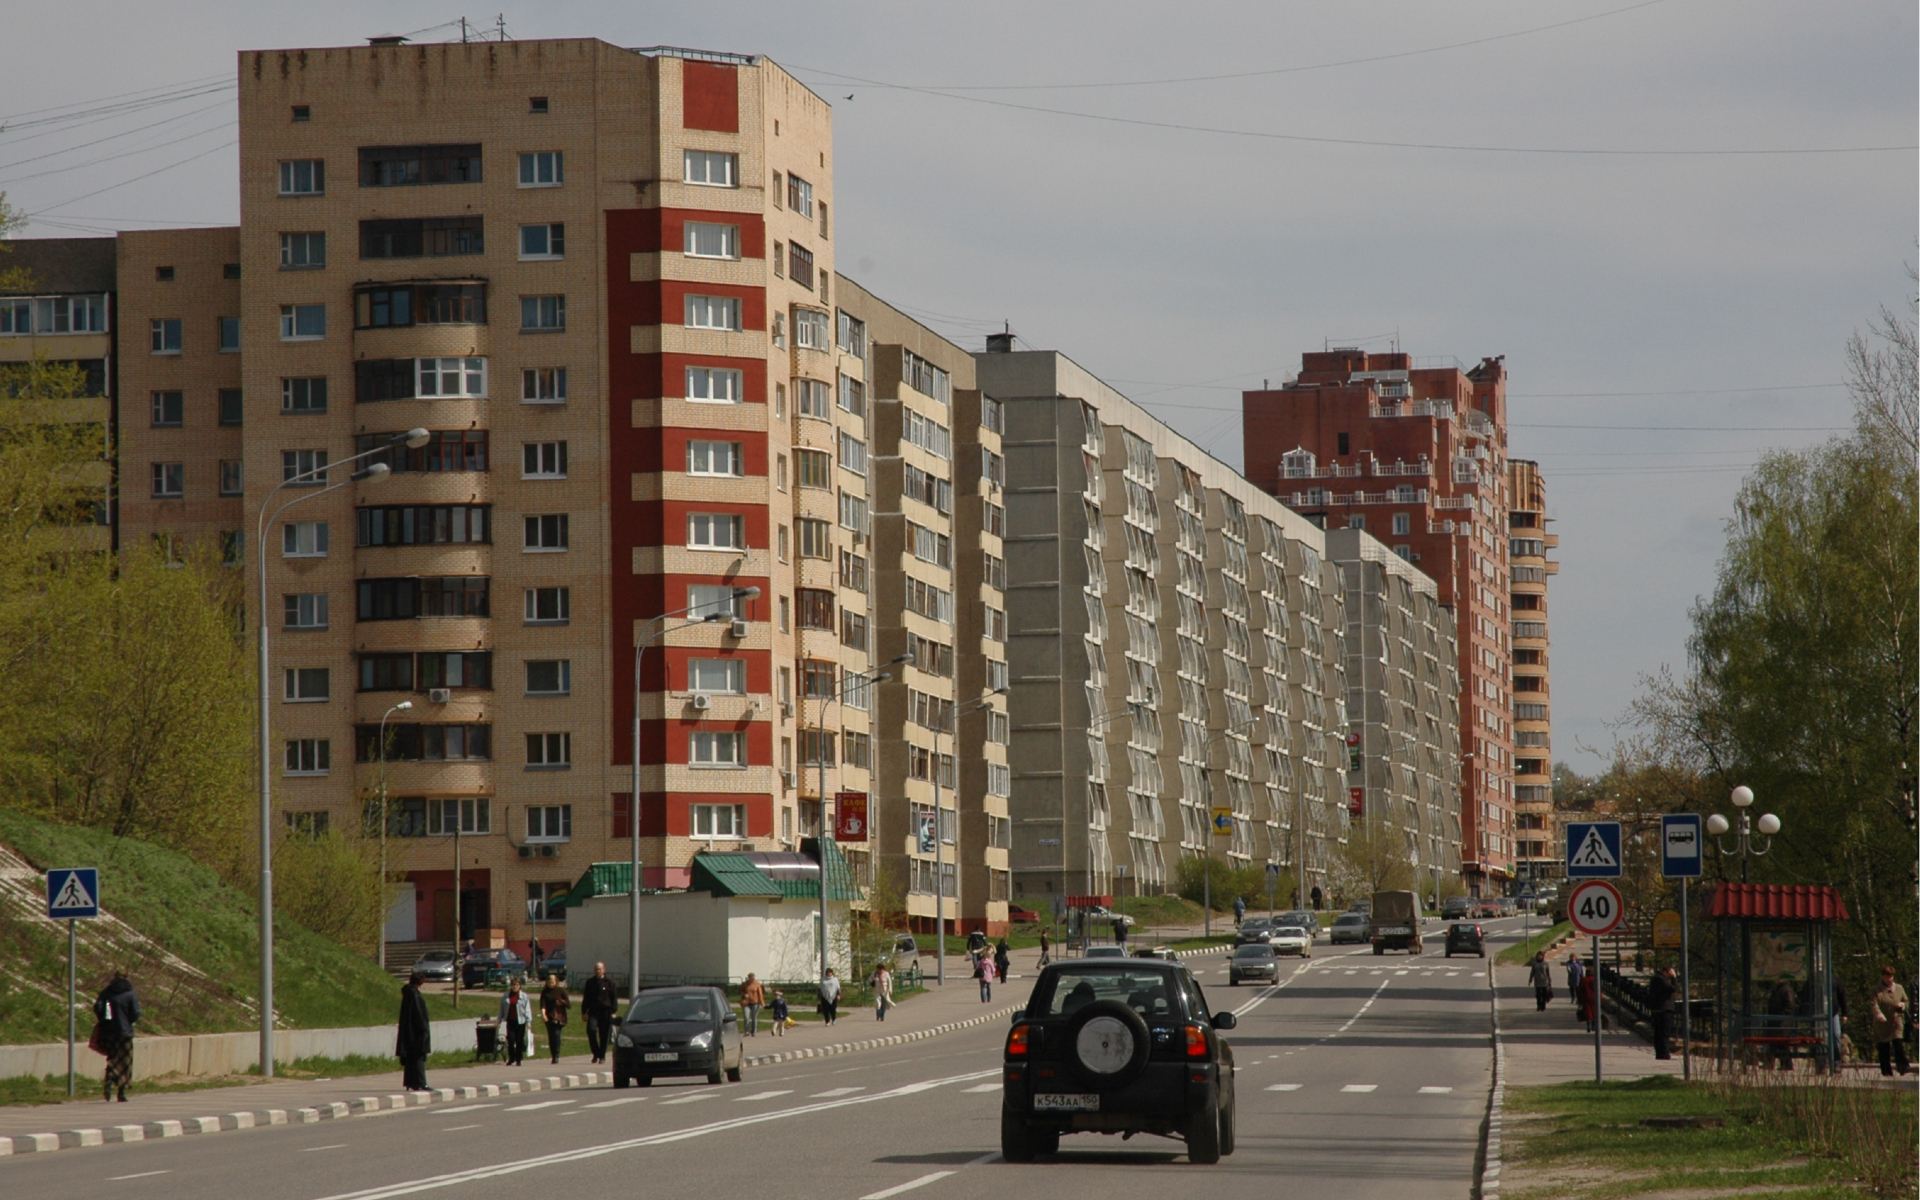 Минимальная стоимость 1 кв.м вторичного жилья среди крупных городов в десятикилометровой зоне от МКАД &mdash; в Дзержинском